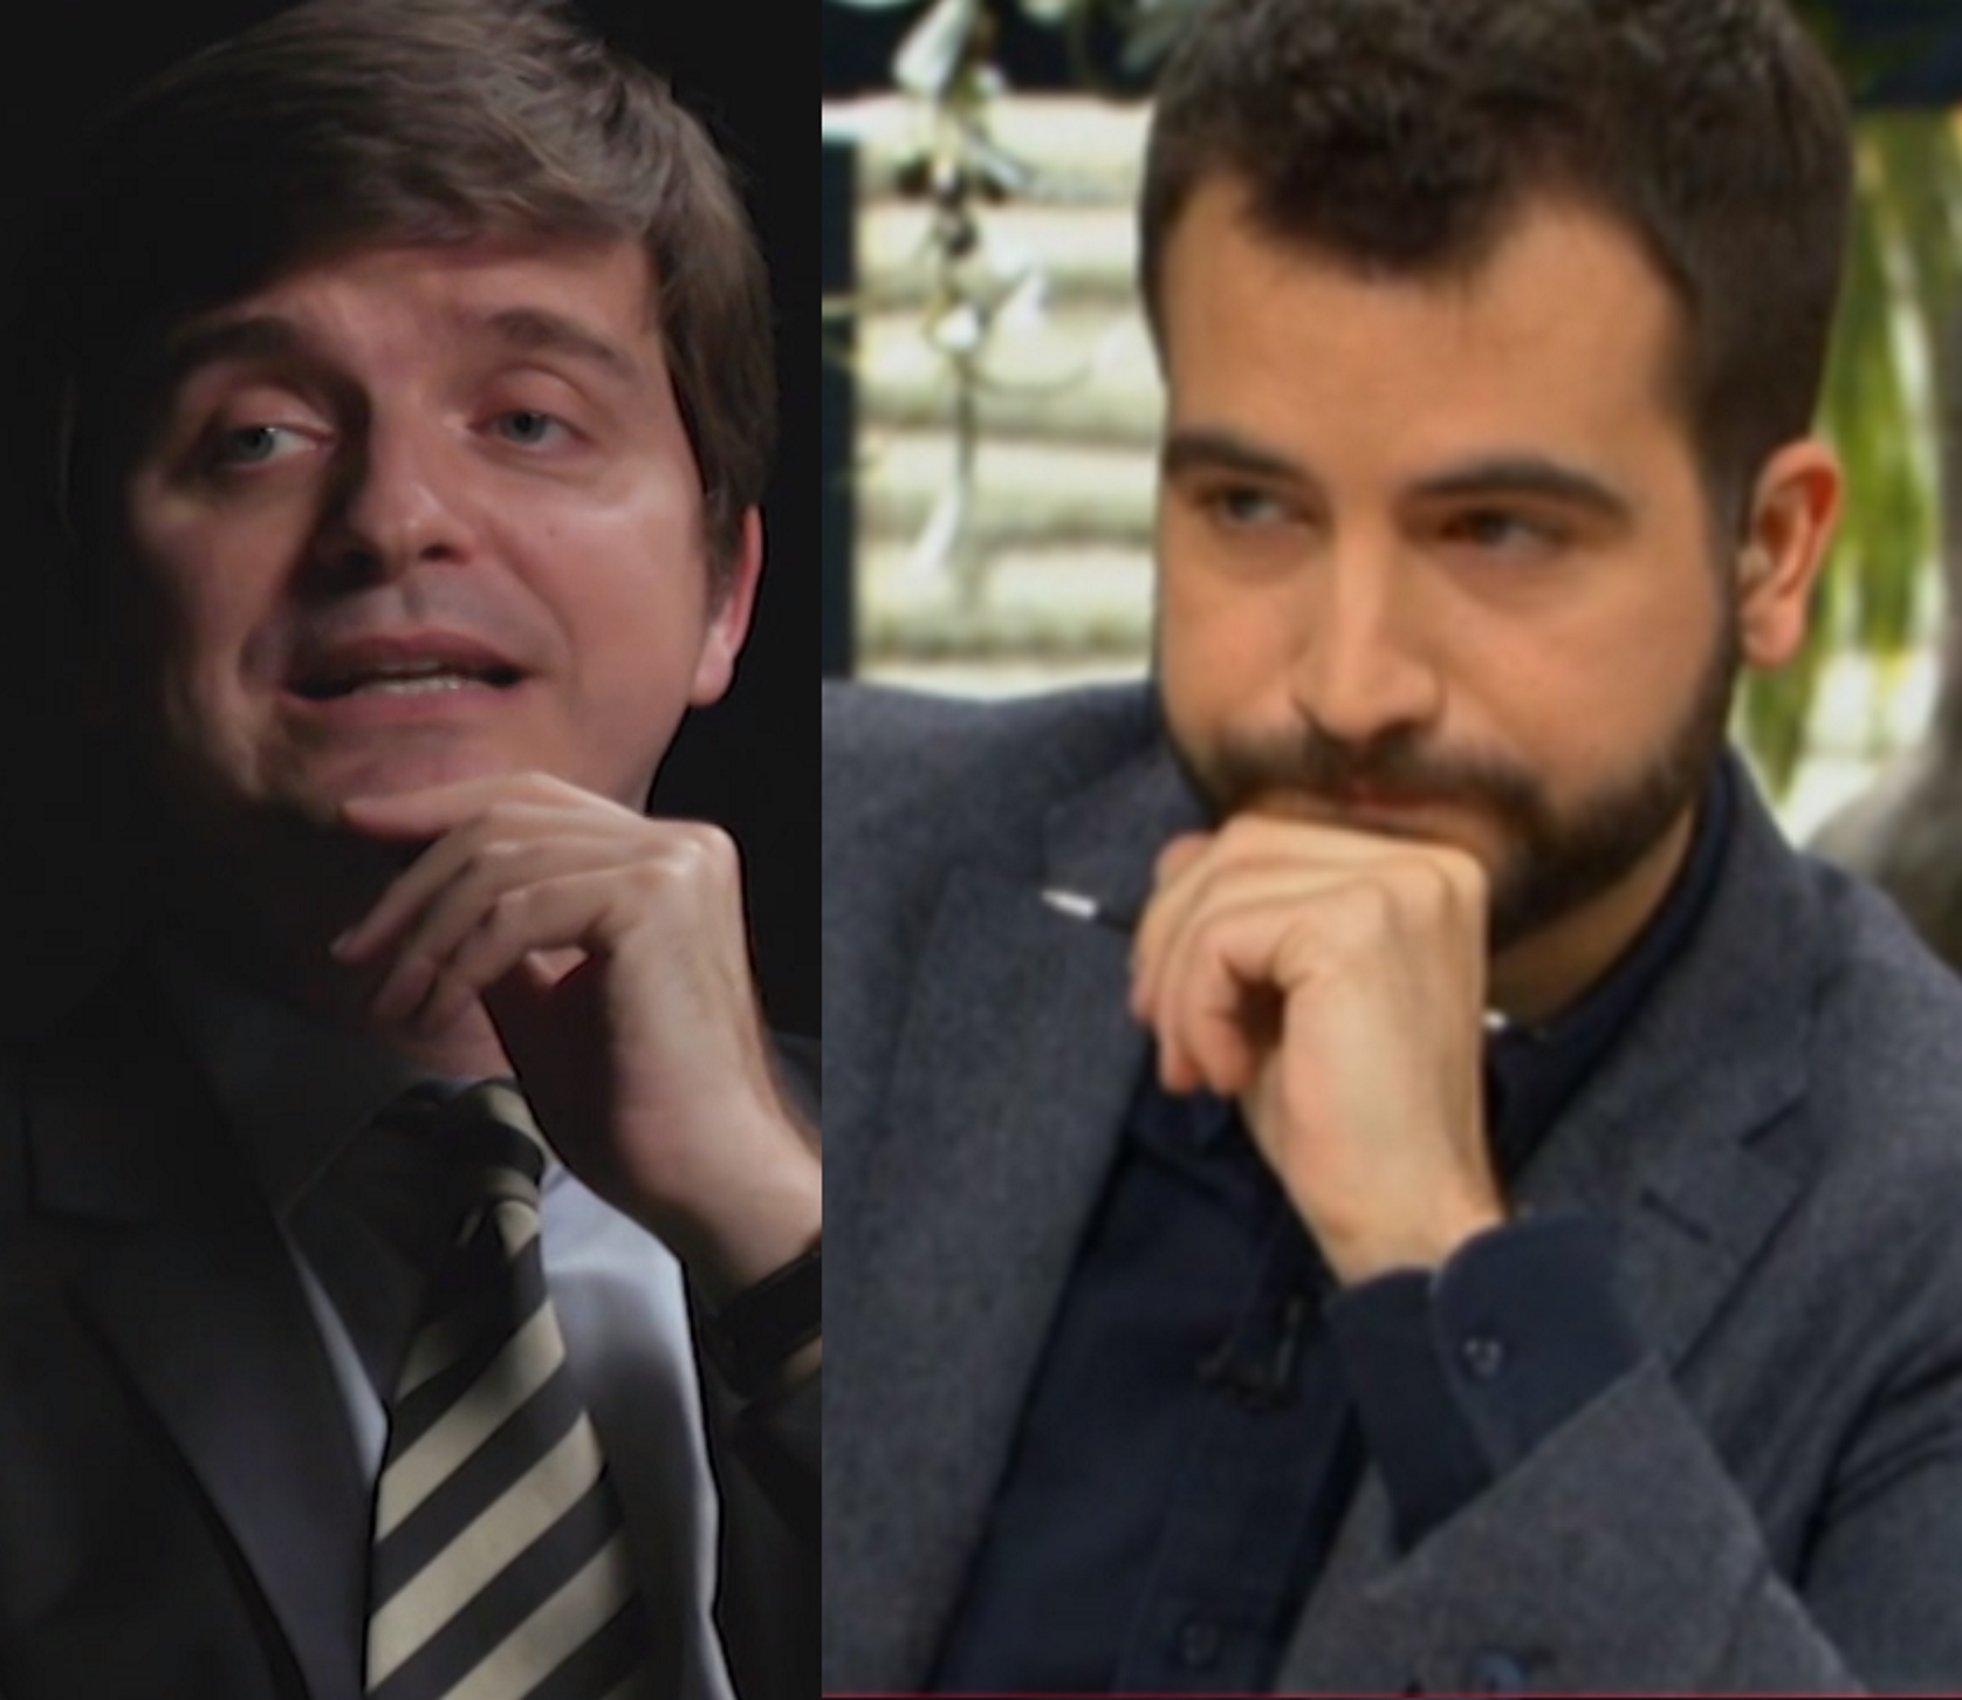 Hilarant dard de Marc Giró contra Ricard Ustrell a TV3